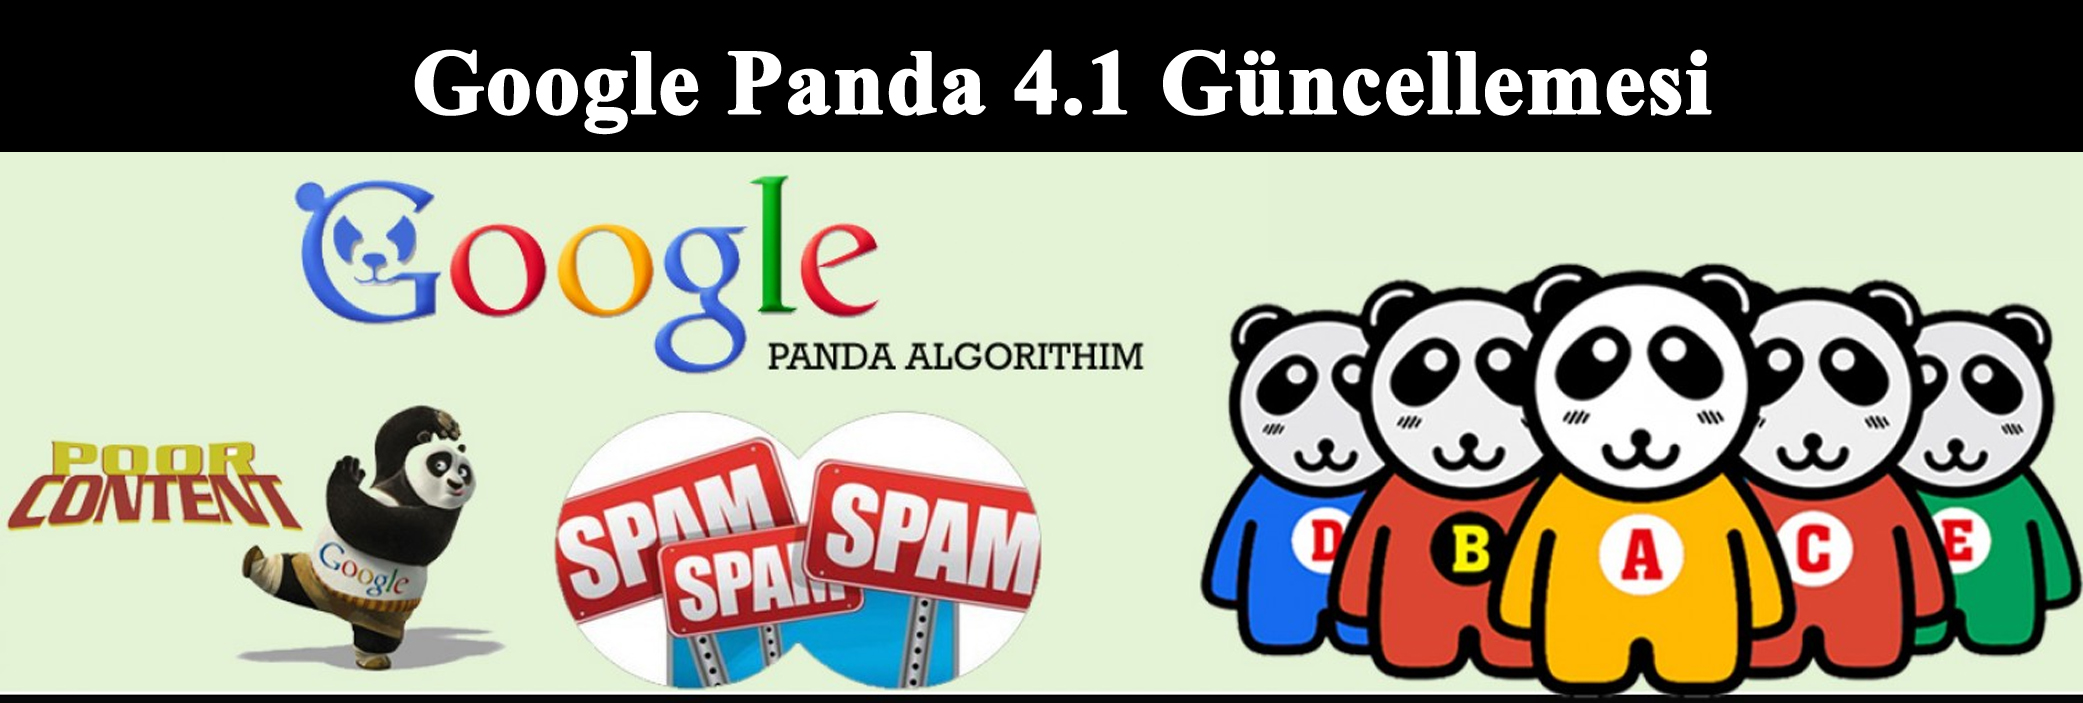 Google Panda 4.1 ile Neler Değişti